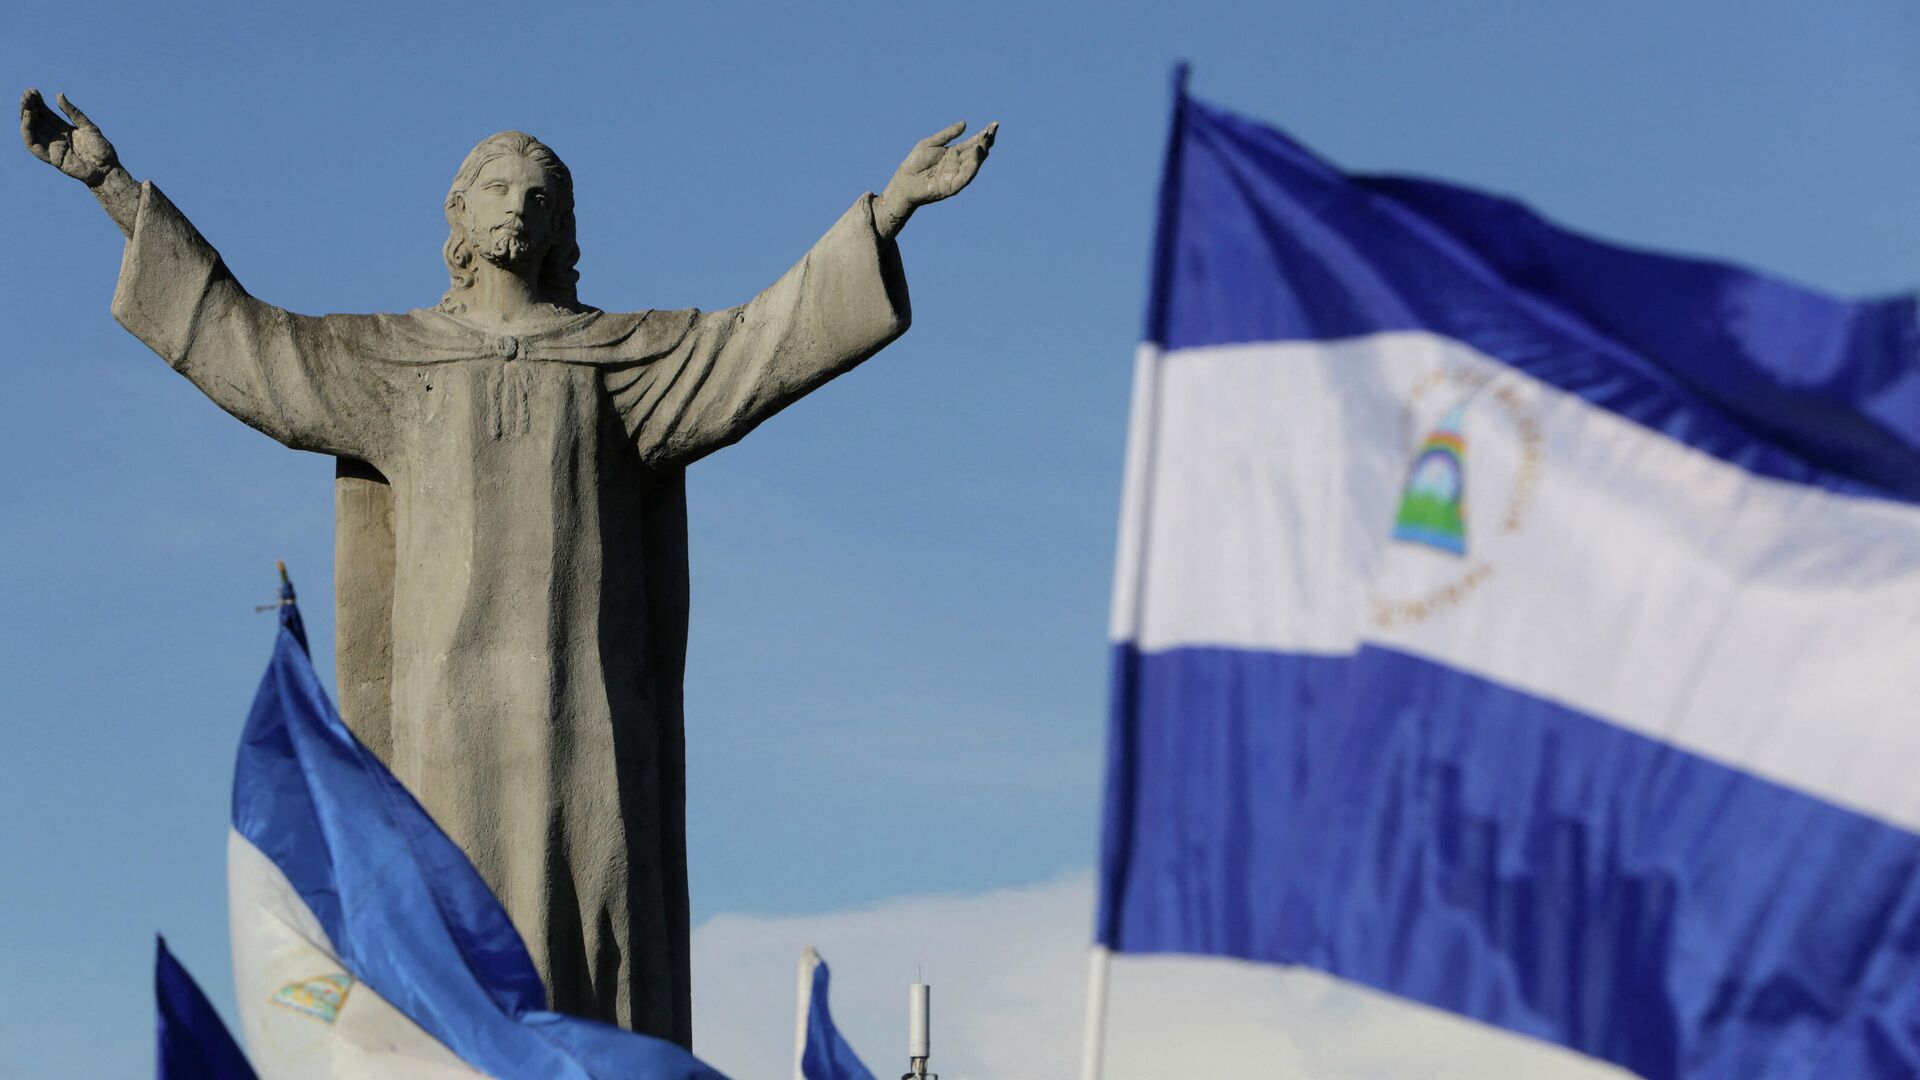 Национальные флаги Никарагуа возле монумента Христу в Манагуа  - Sputnik Беларусь, 1920, 18.10.2021